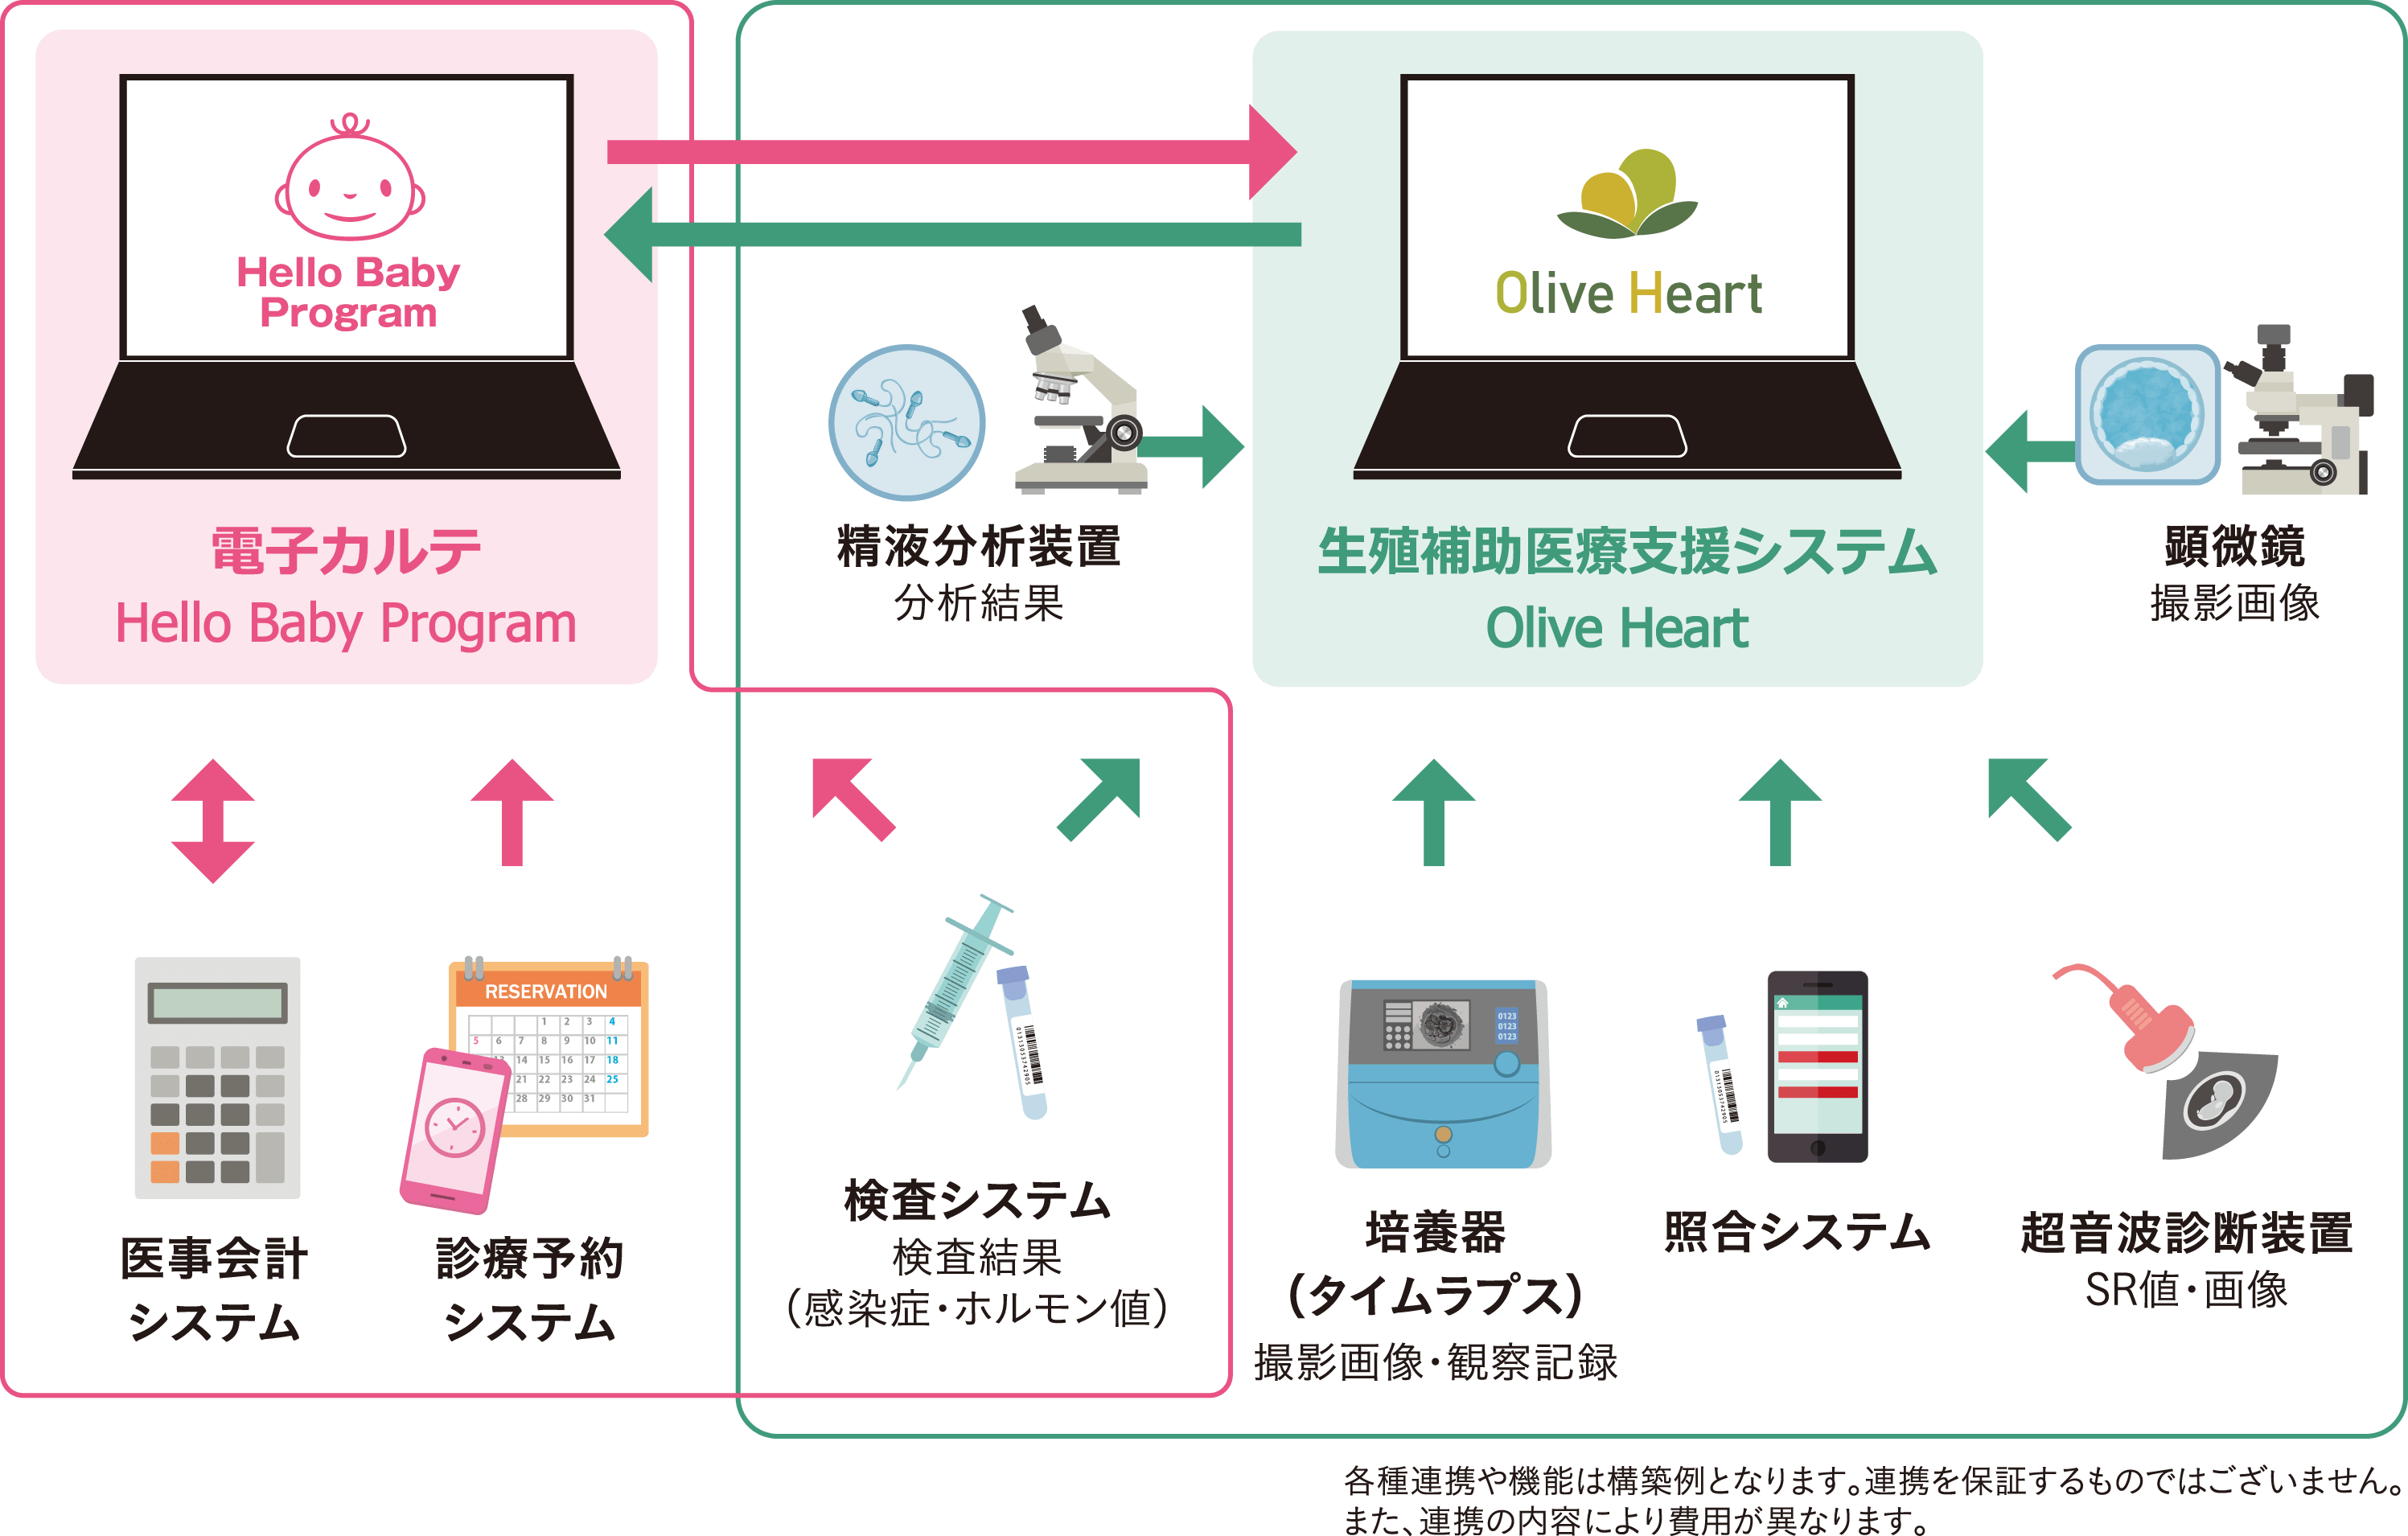 生殖補助医療支援システム Olive Heart 他システムとの連携